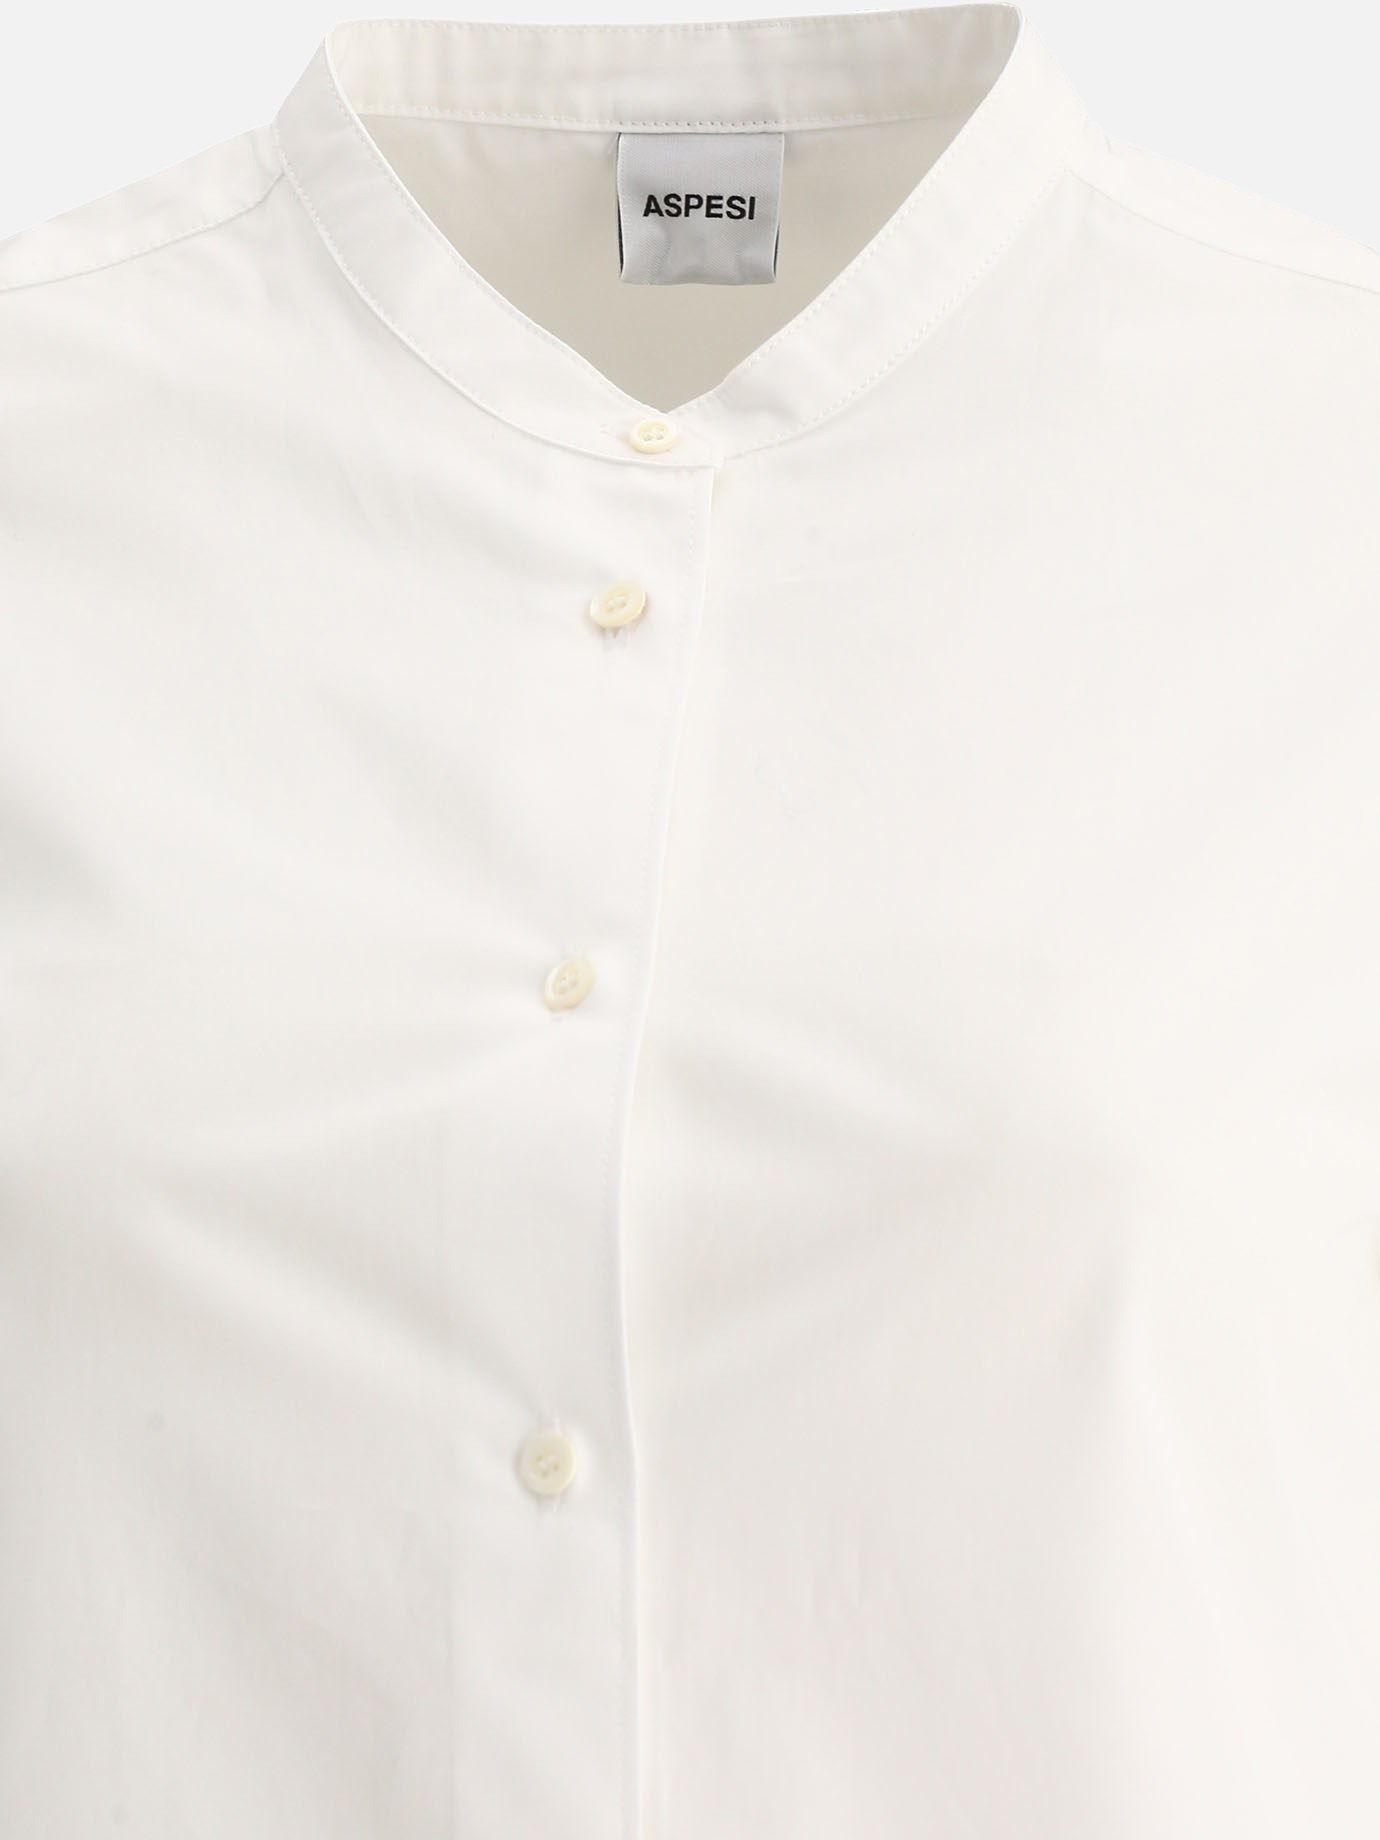 Mandarin collar shirt by Aspesi